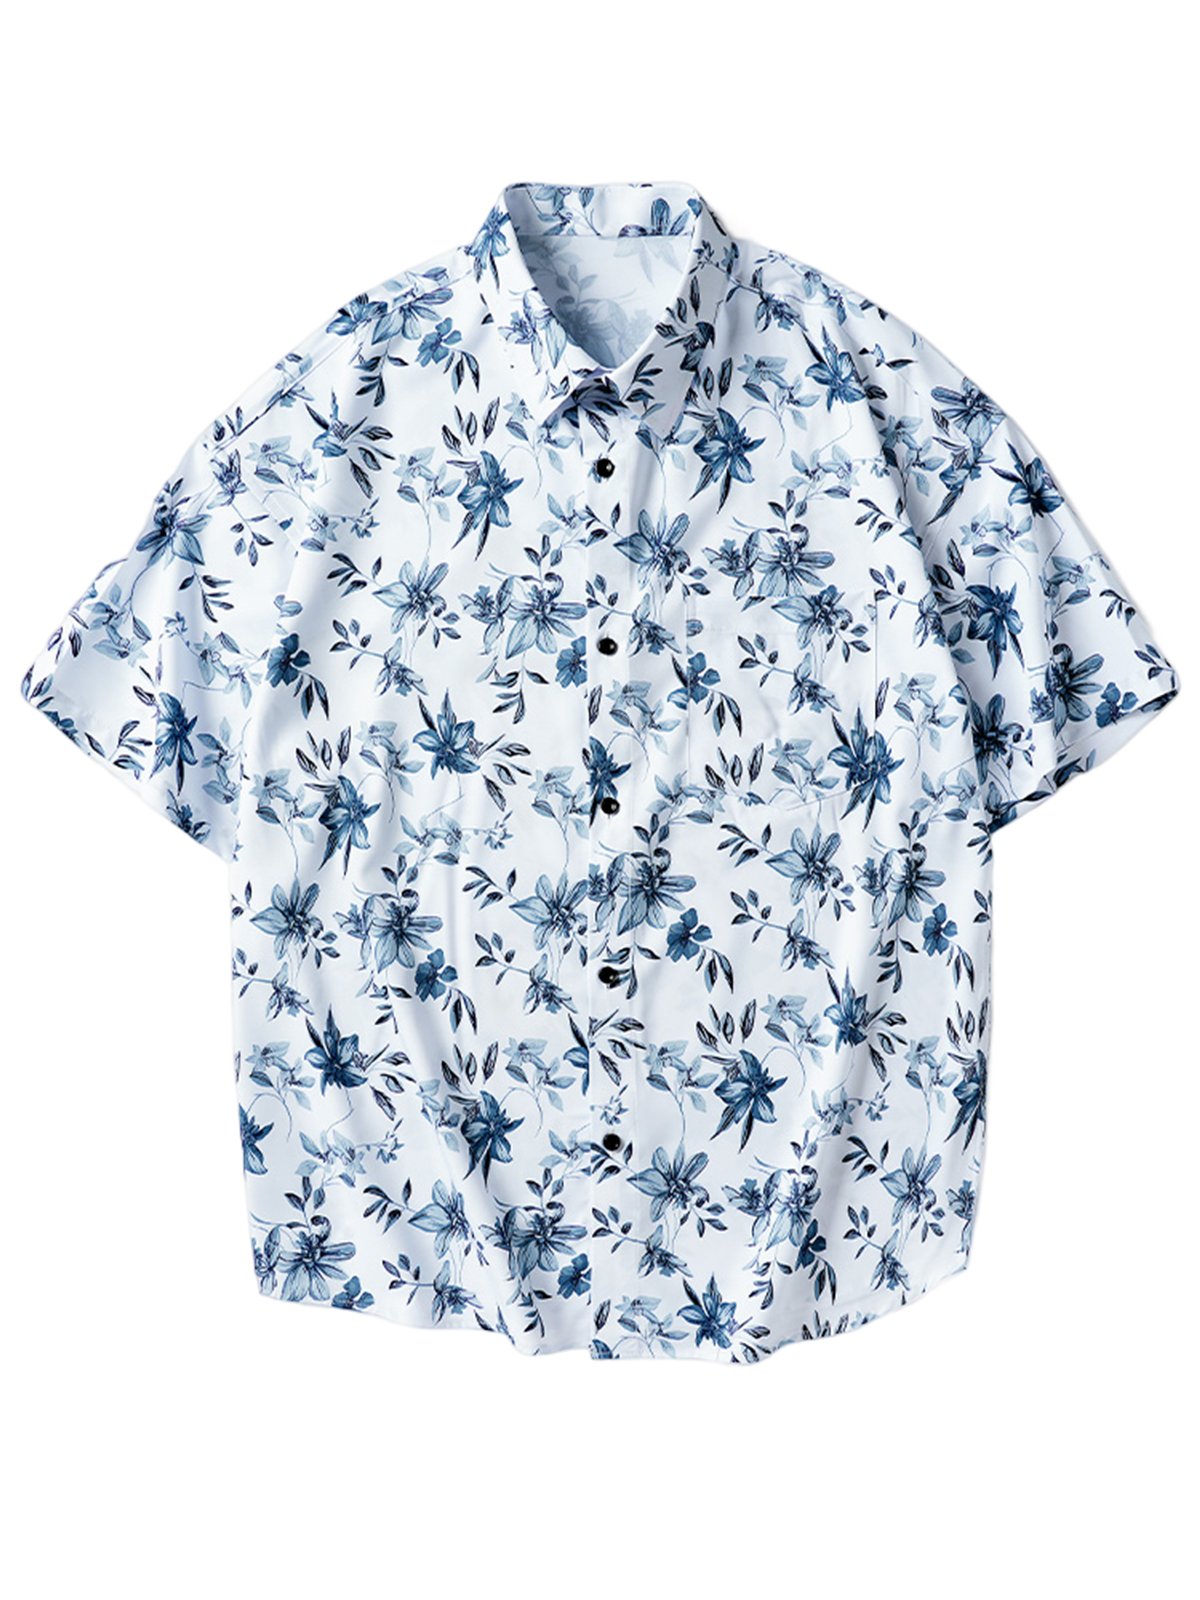 Men's Floral Print Pocket Button Up Hawaiian Summer Short Sleeve Shirt